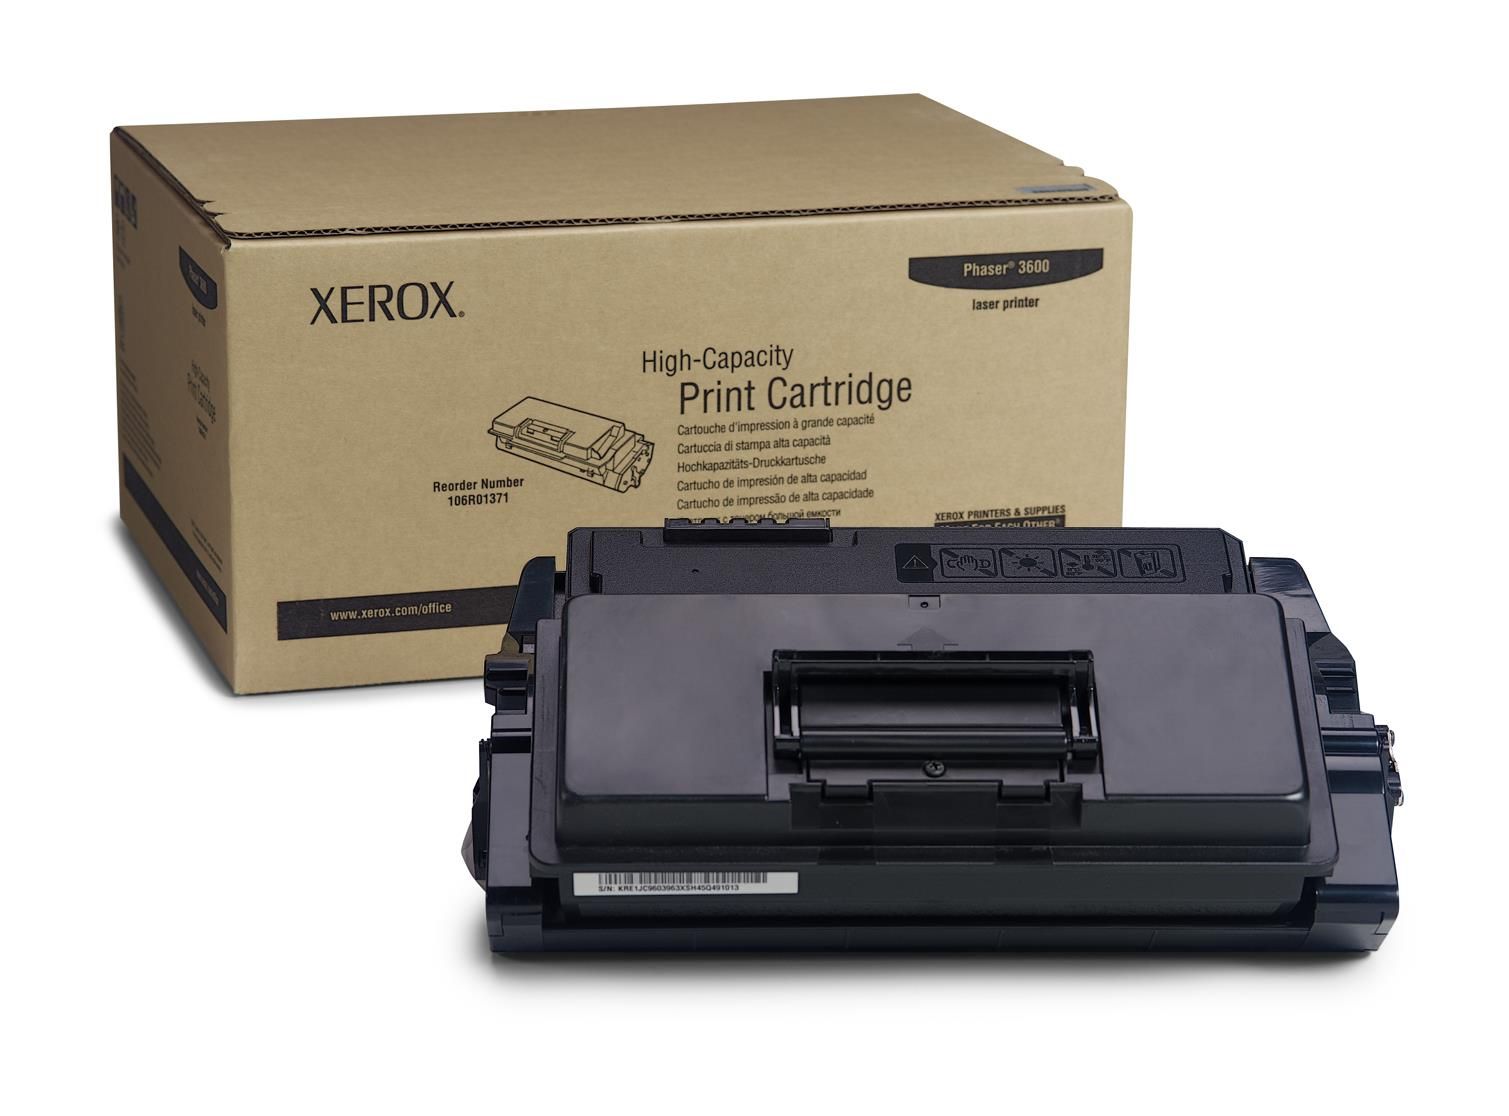 Xerox Print Cartridge High